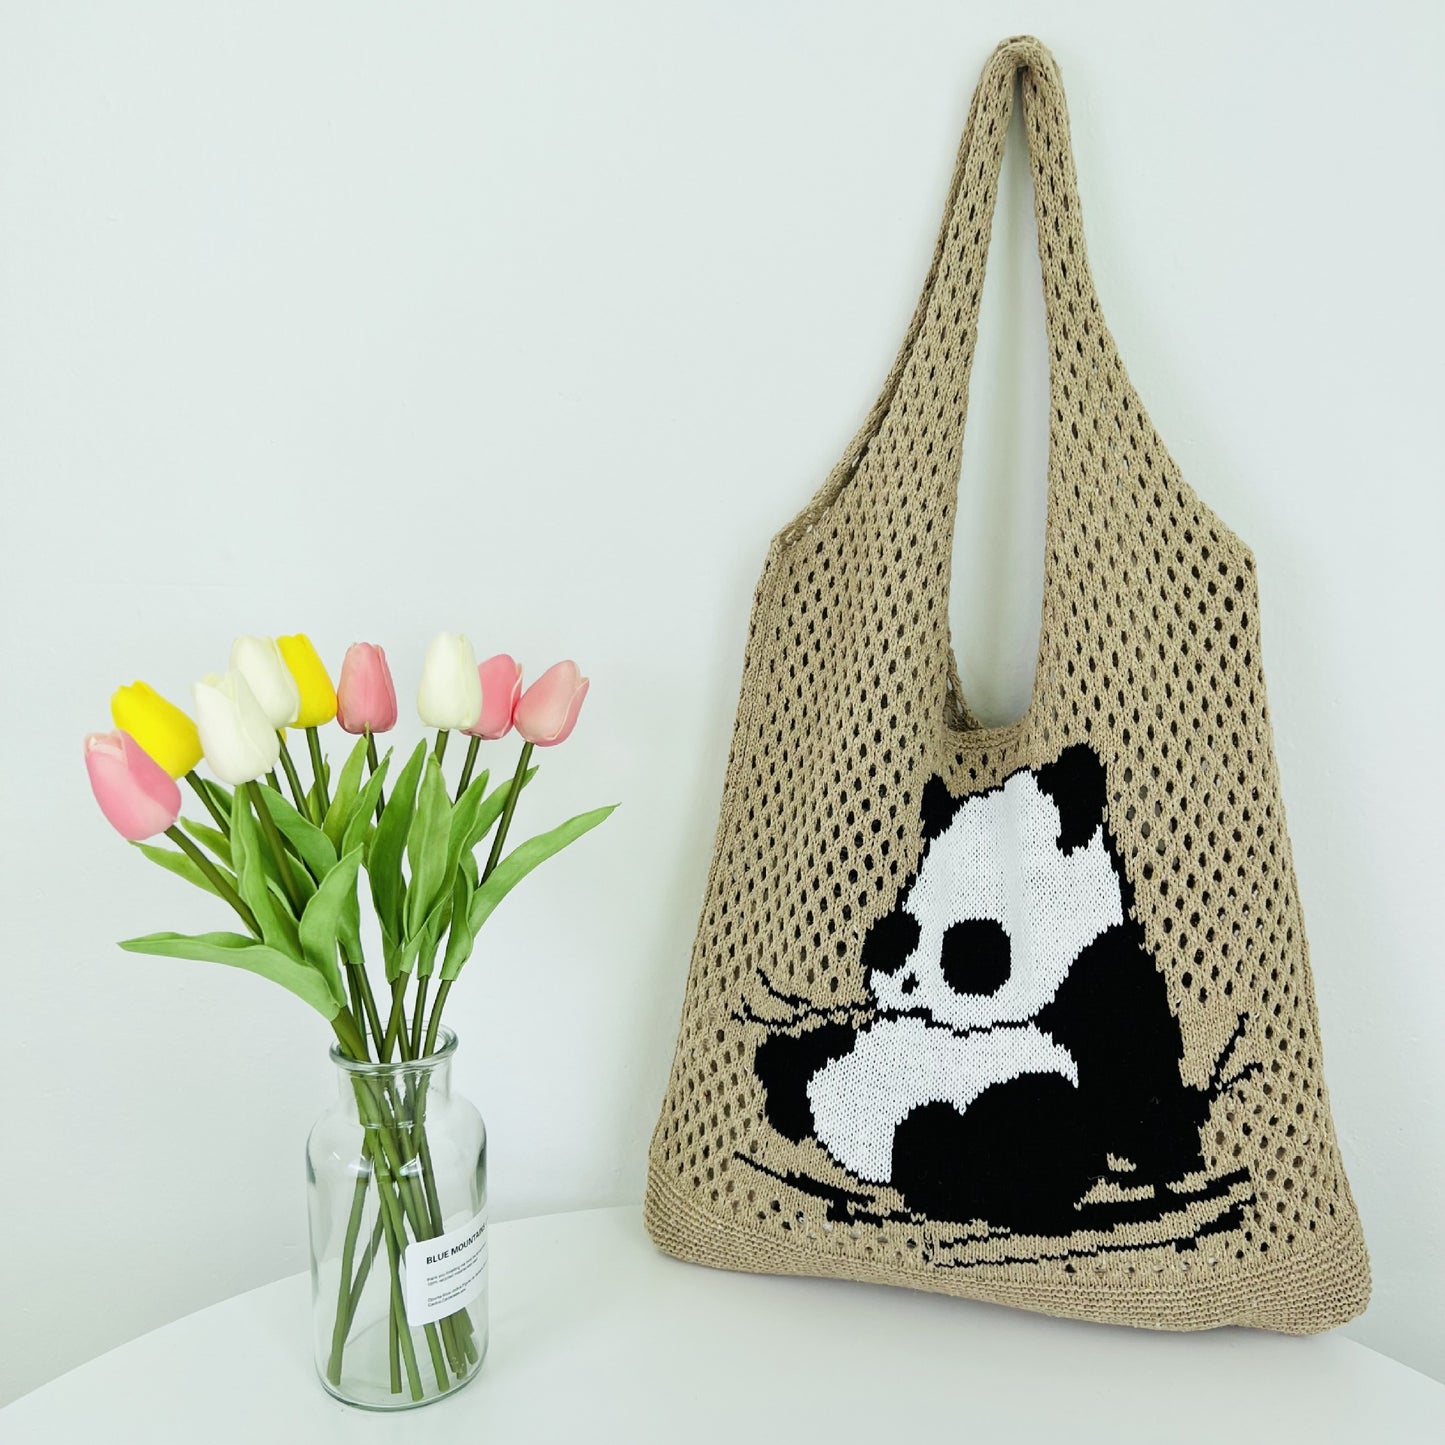 Panda tote bag: Cute Crochet Bag in 5 Delightful Colors